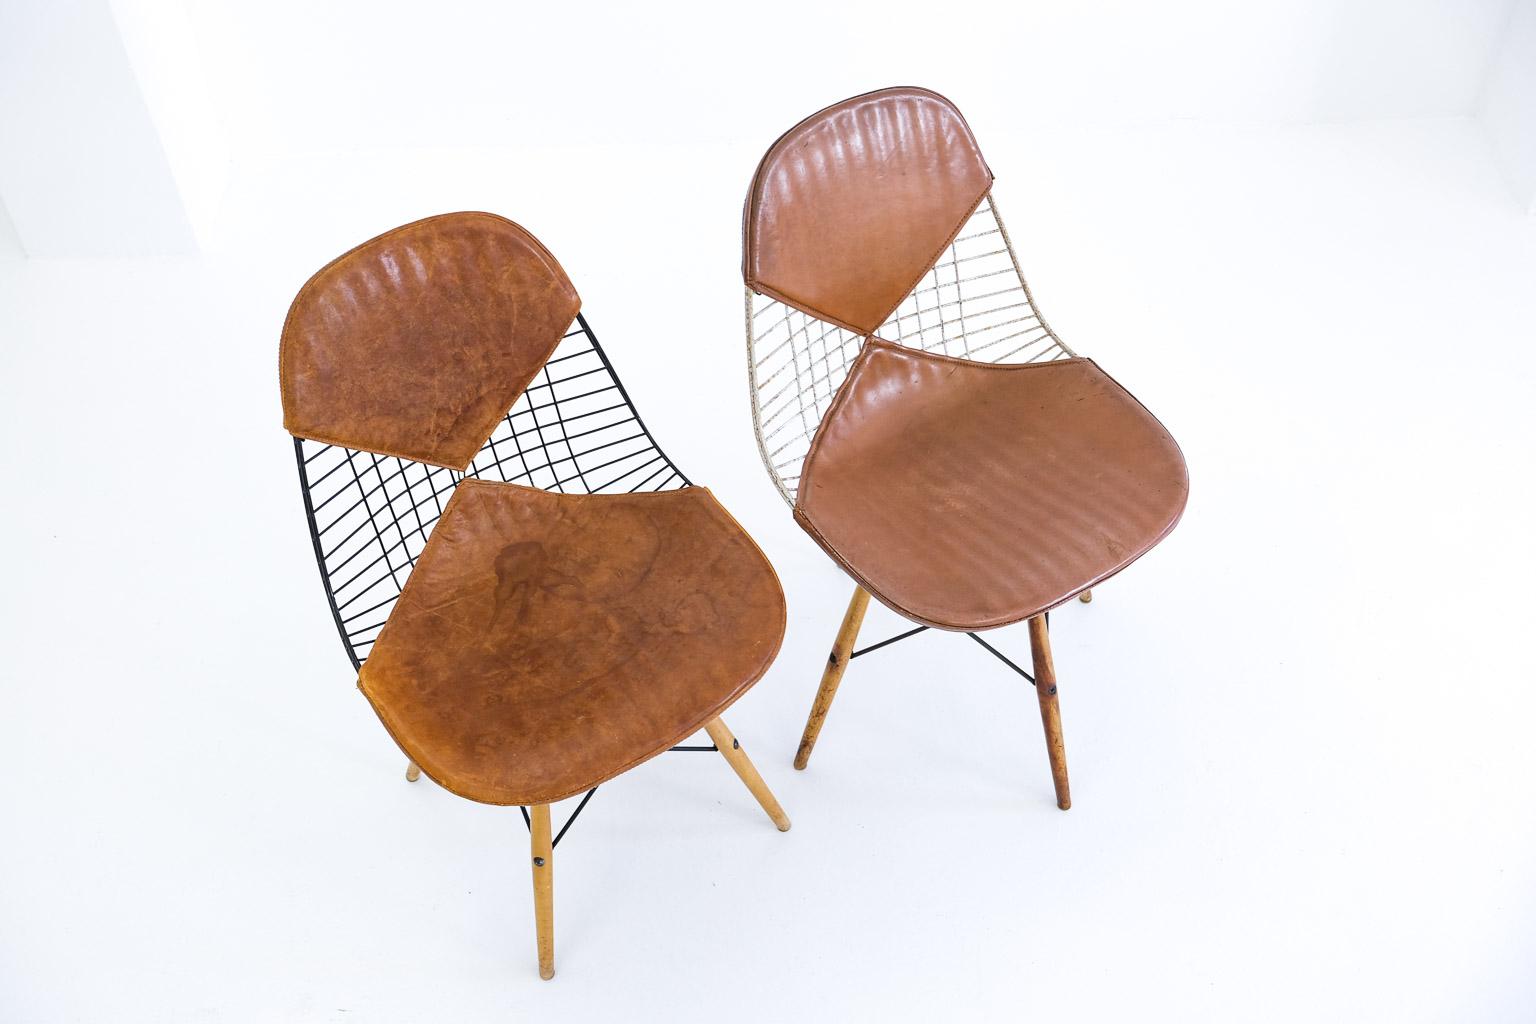 Pkw-2 Pivoting K-Wire Wood Base Side Chair, Eames Herman Miller, Bikini, Seng For Sale 6